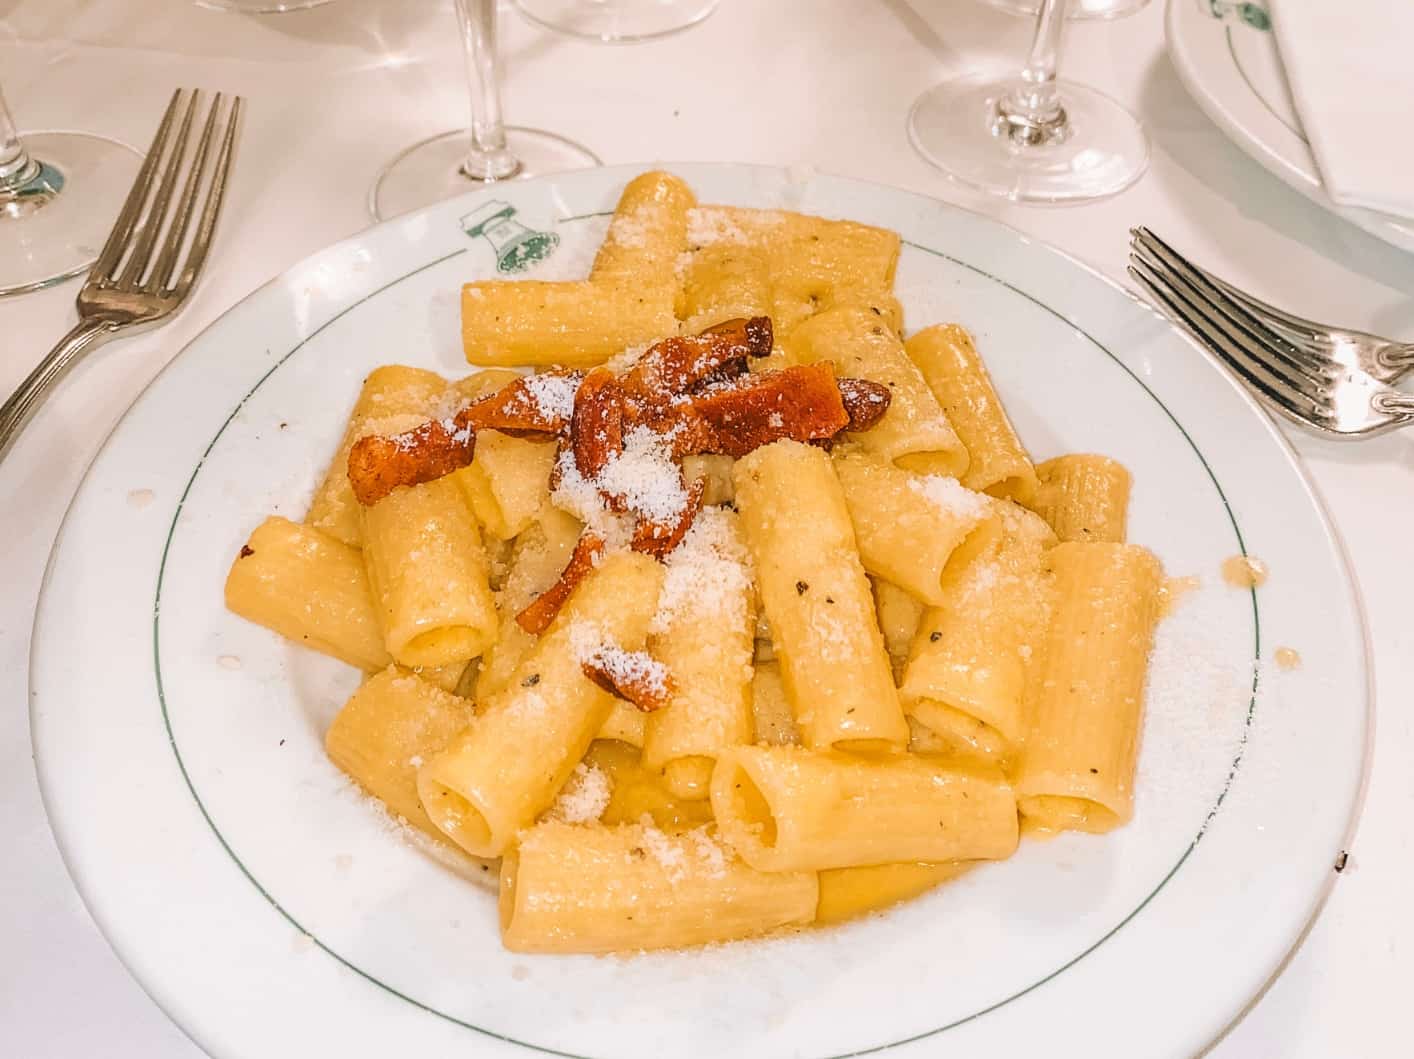 Rigatoni alla carbonara from Ristorante La Campana – the oldest restaurant in Rome. 